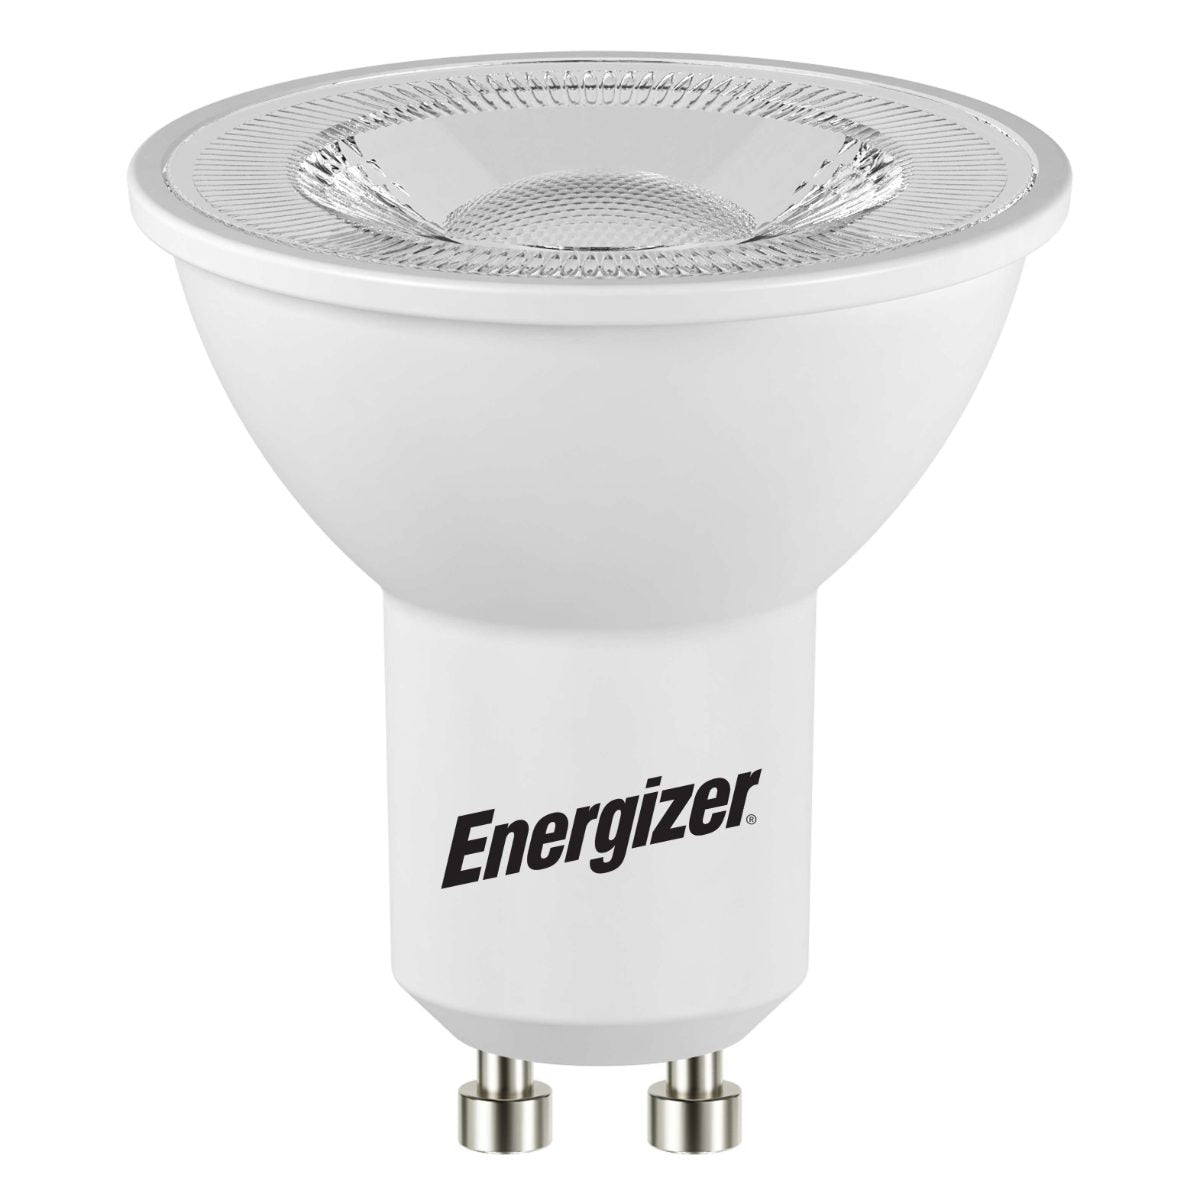 Energizer LED GU10 345 Lumen 4,2 W 3.000 K (Warmweiß), Packung mit 1 Stück